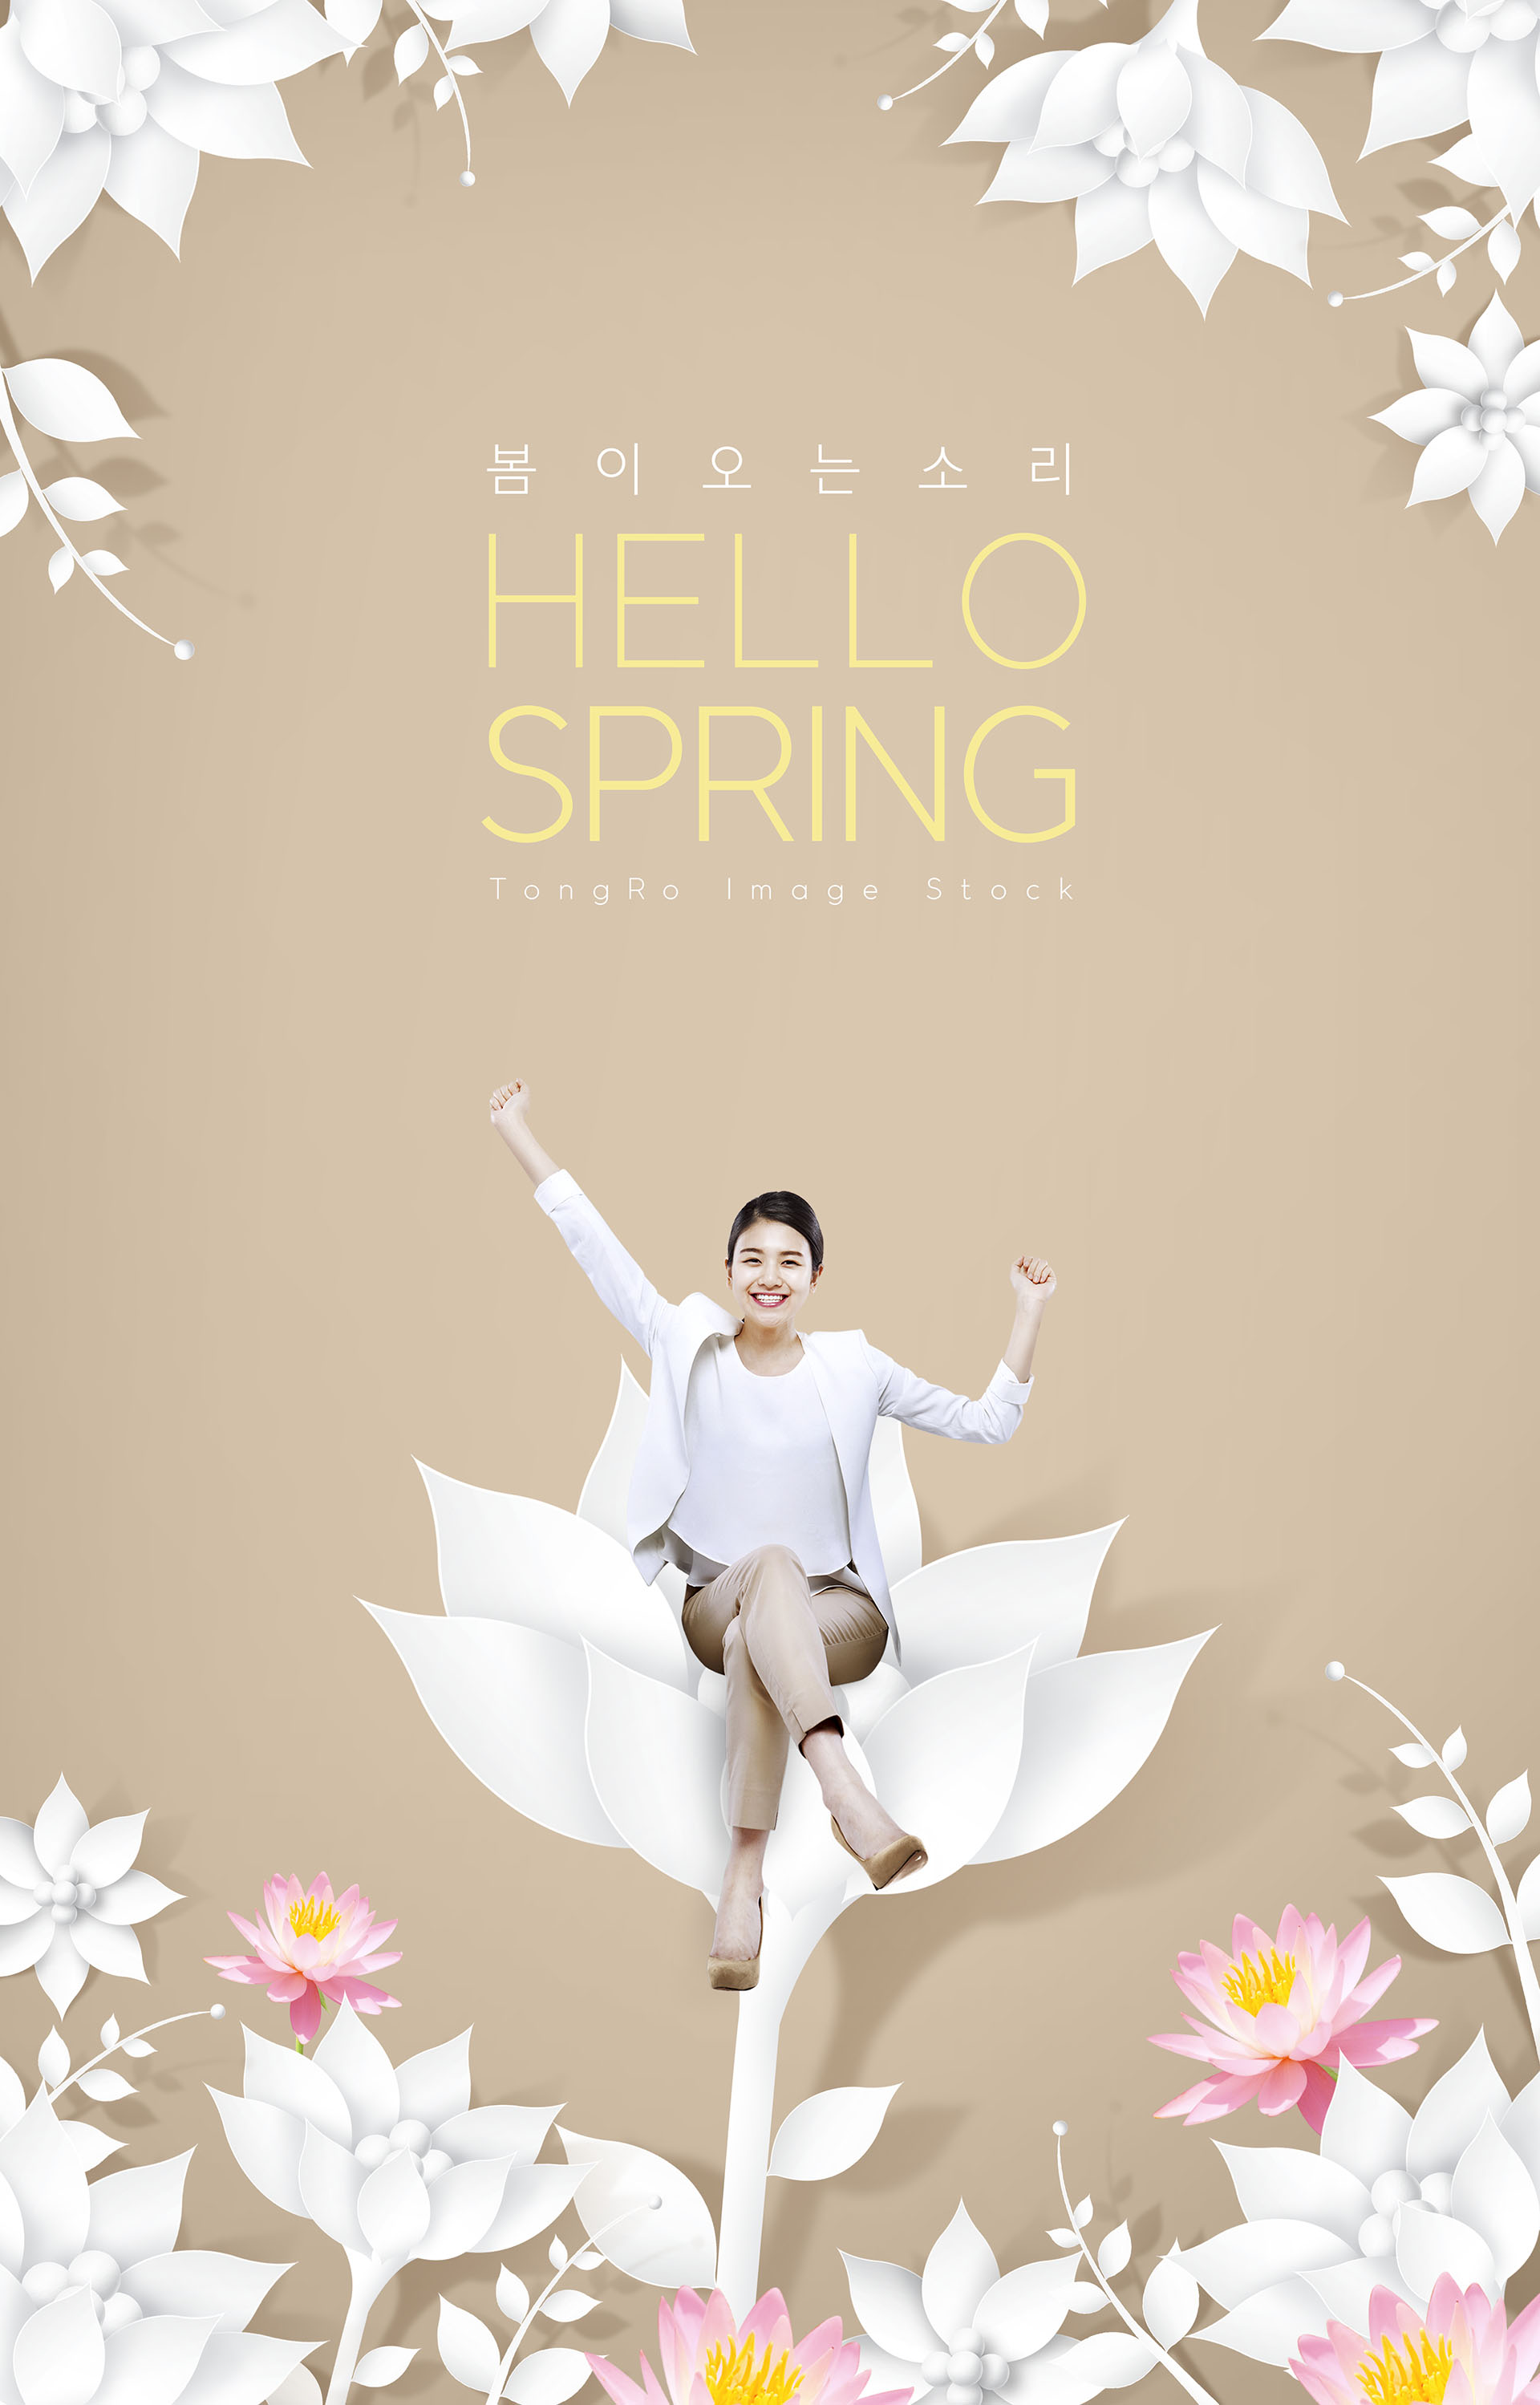 适合春季春天38节宣传的海报模板下载[PSD]插图(4)